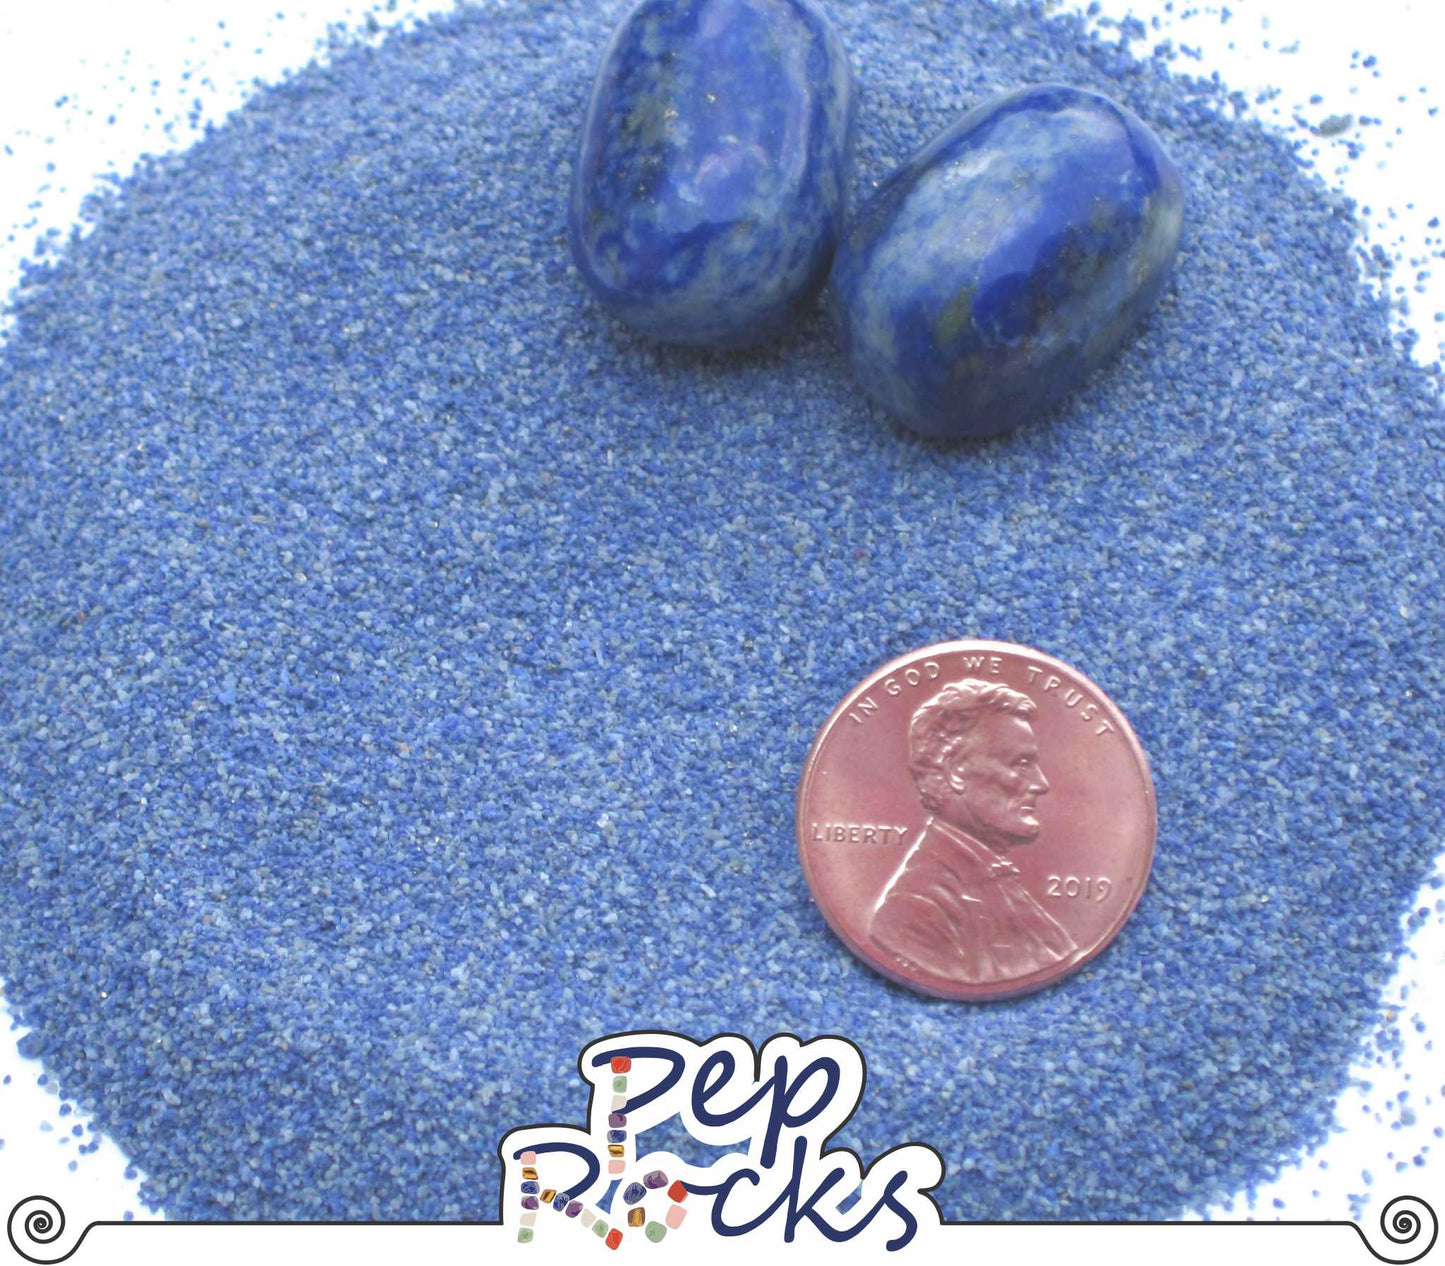 Lapis Lazuli - Medium sand particles